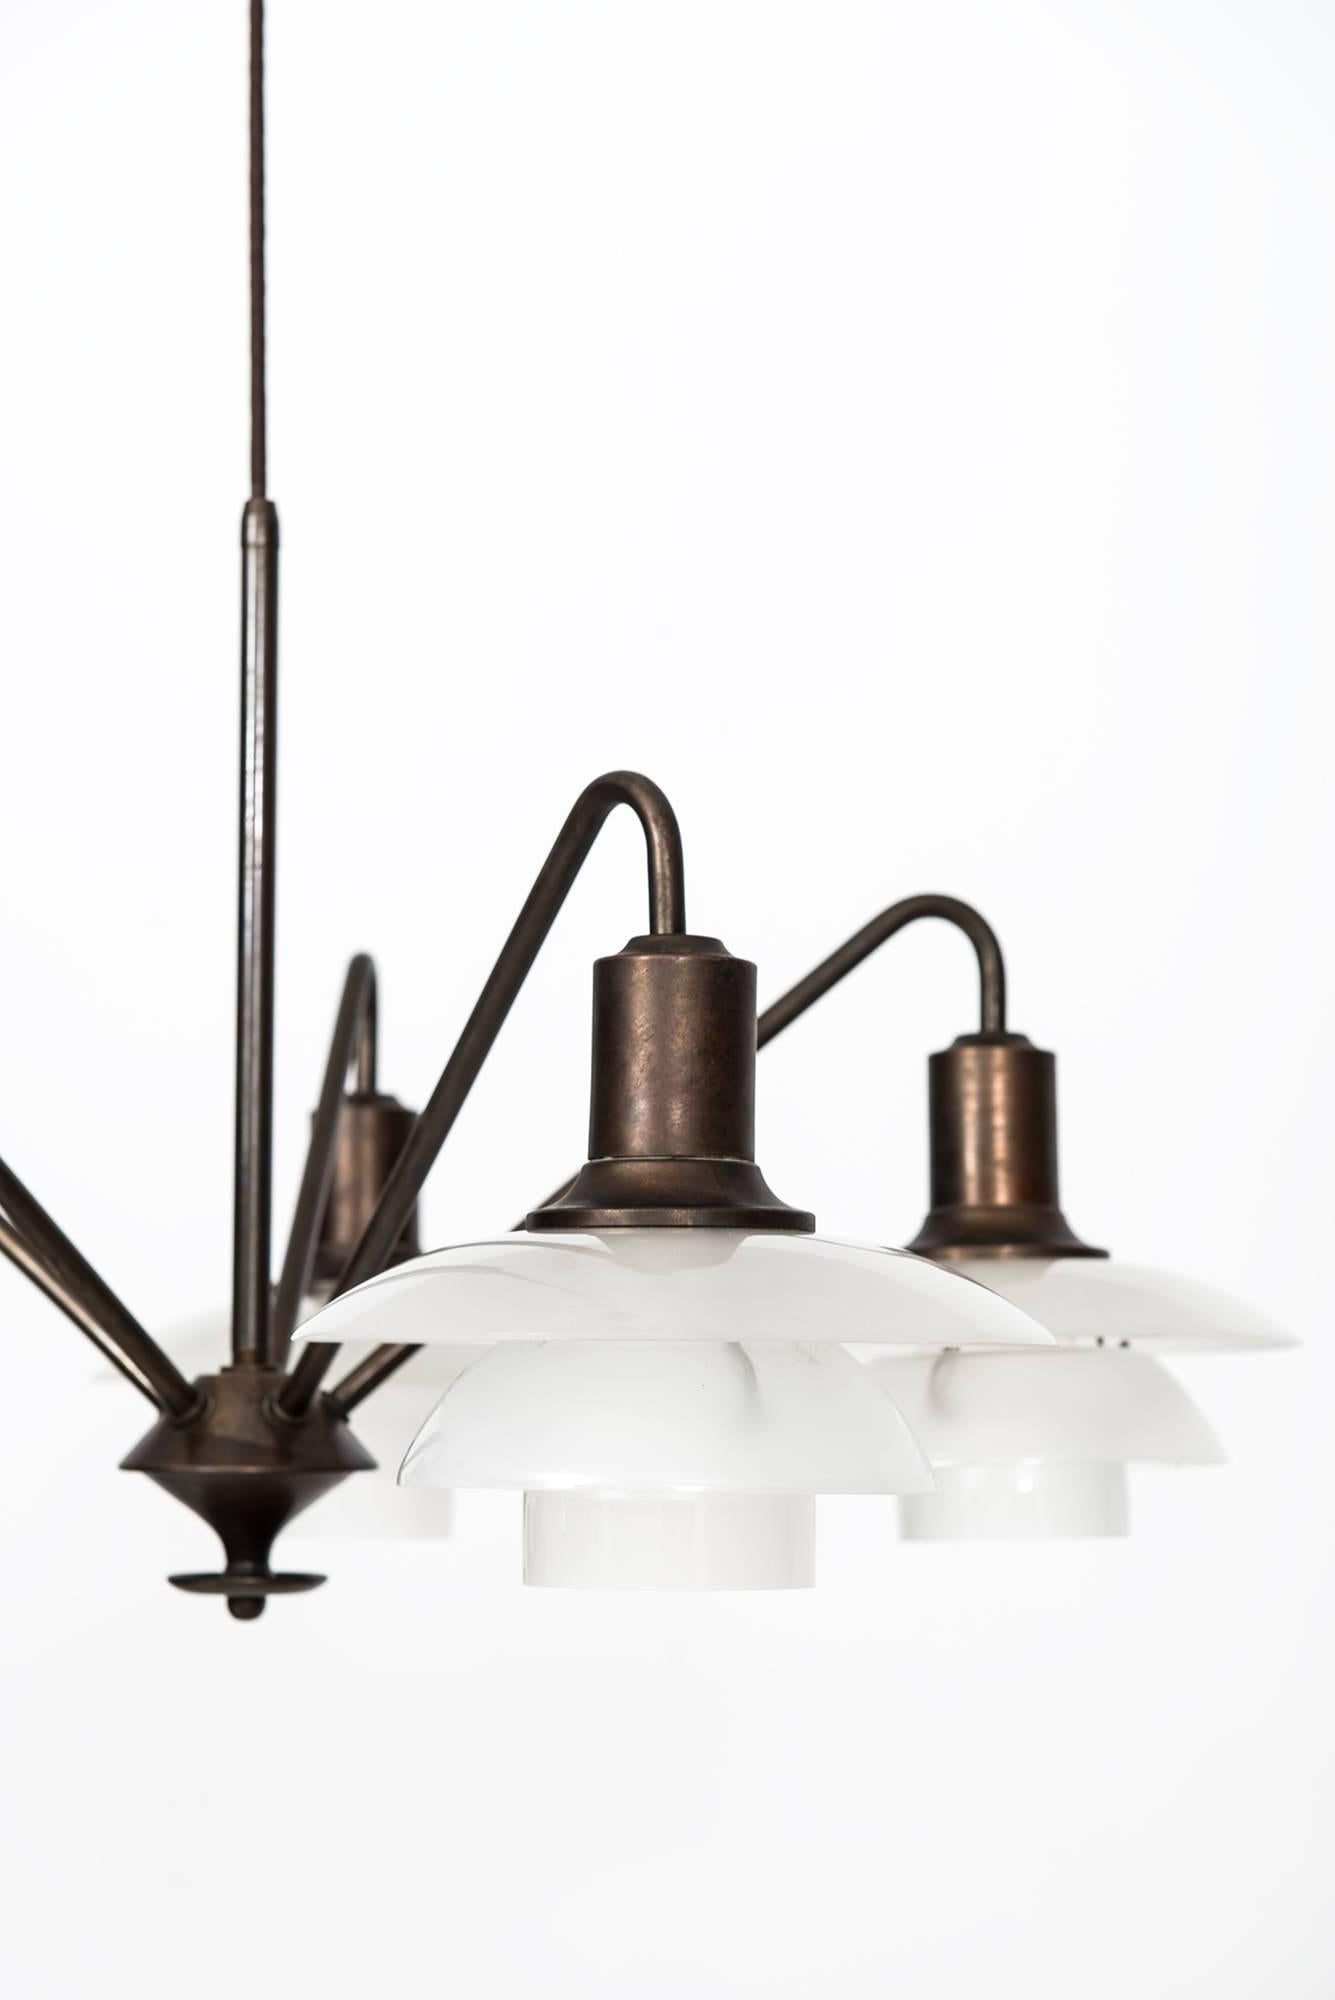 Danish Poul Henningsen Ceiling Lamp Model 'Kejserkrone' by Louis Poulsen in Denmark